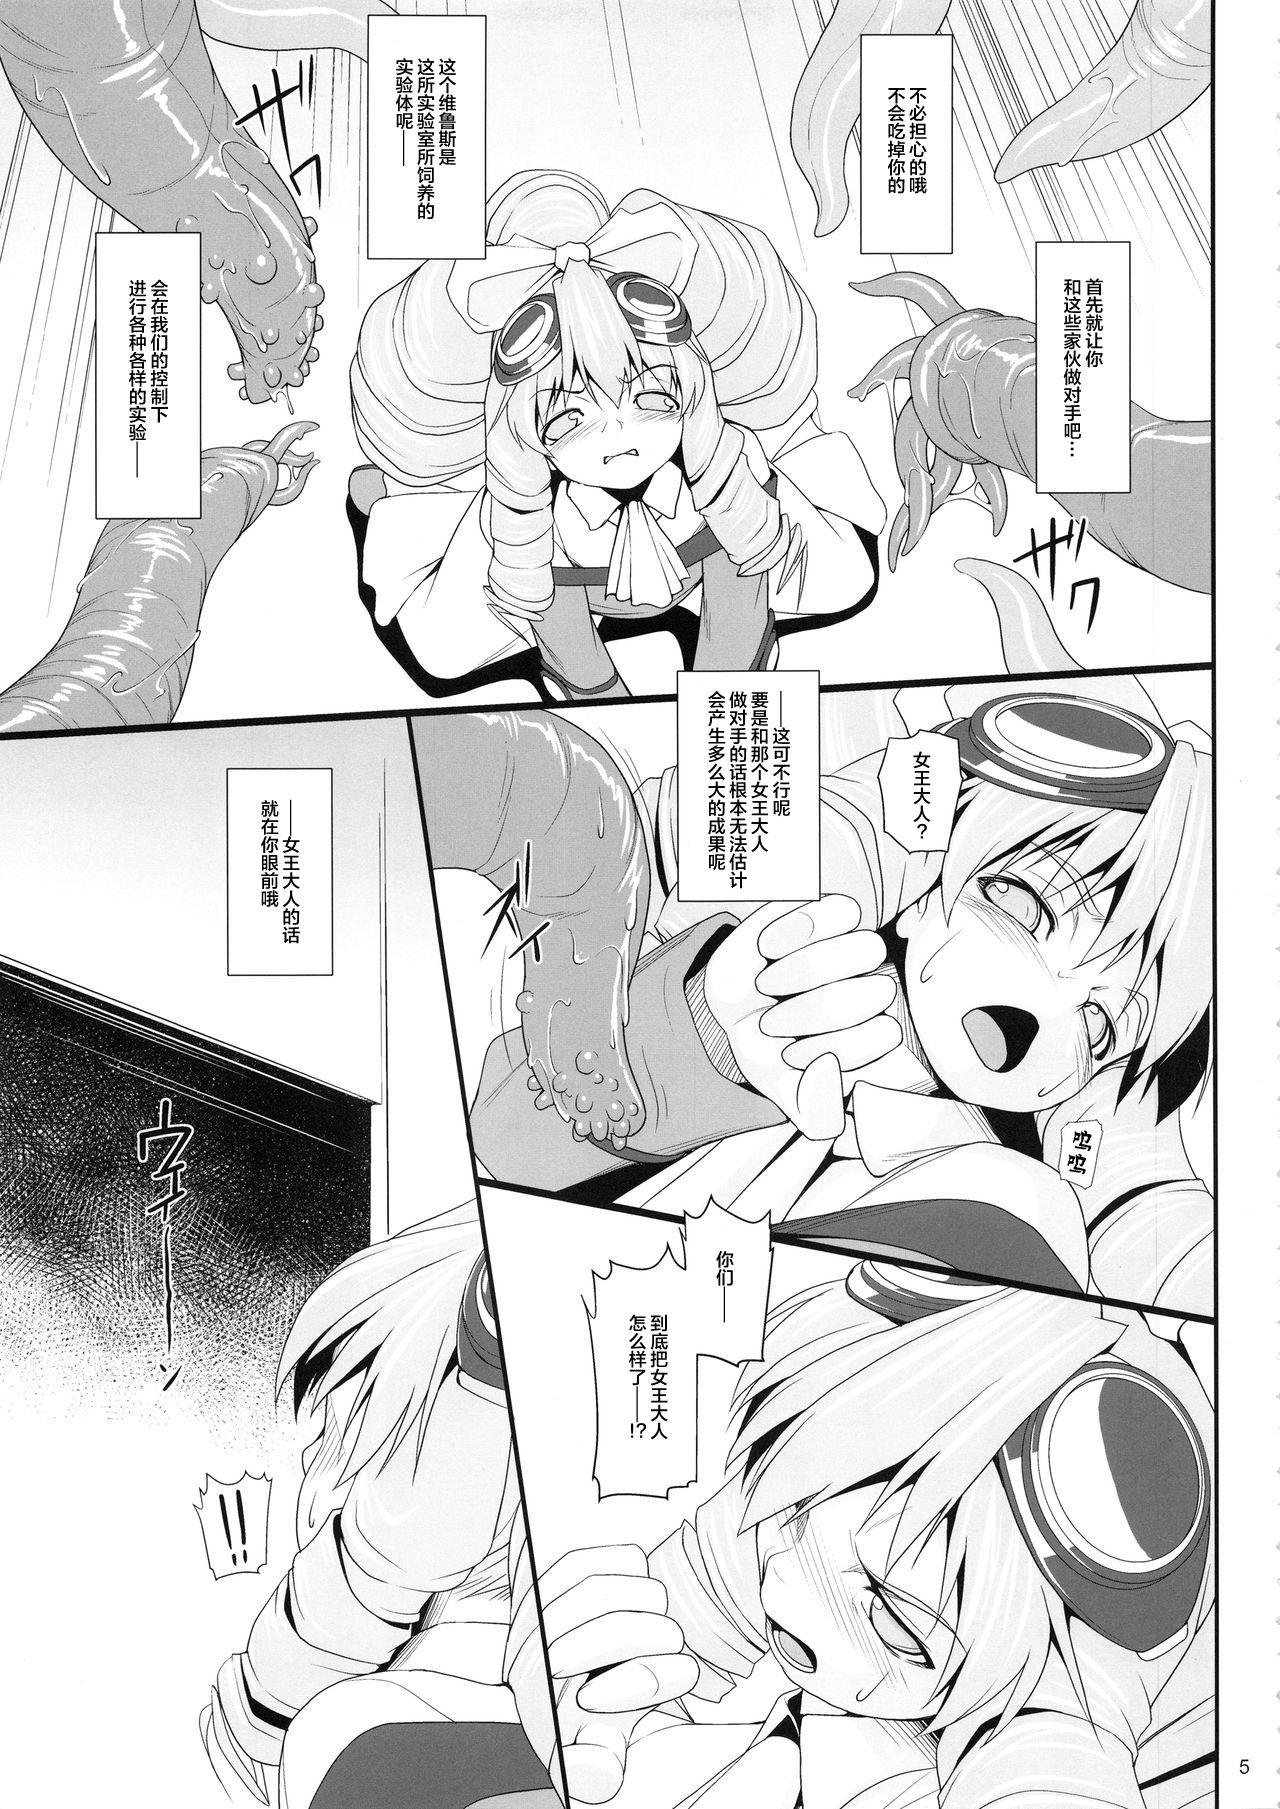 Str8 Shokuzai no Ma 5 - Xenogears Flaca - Page 4